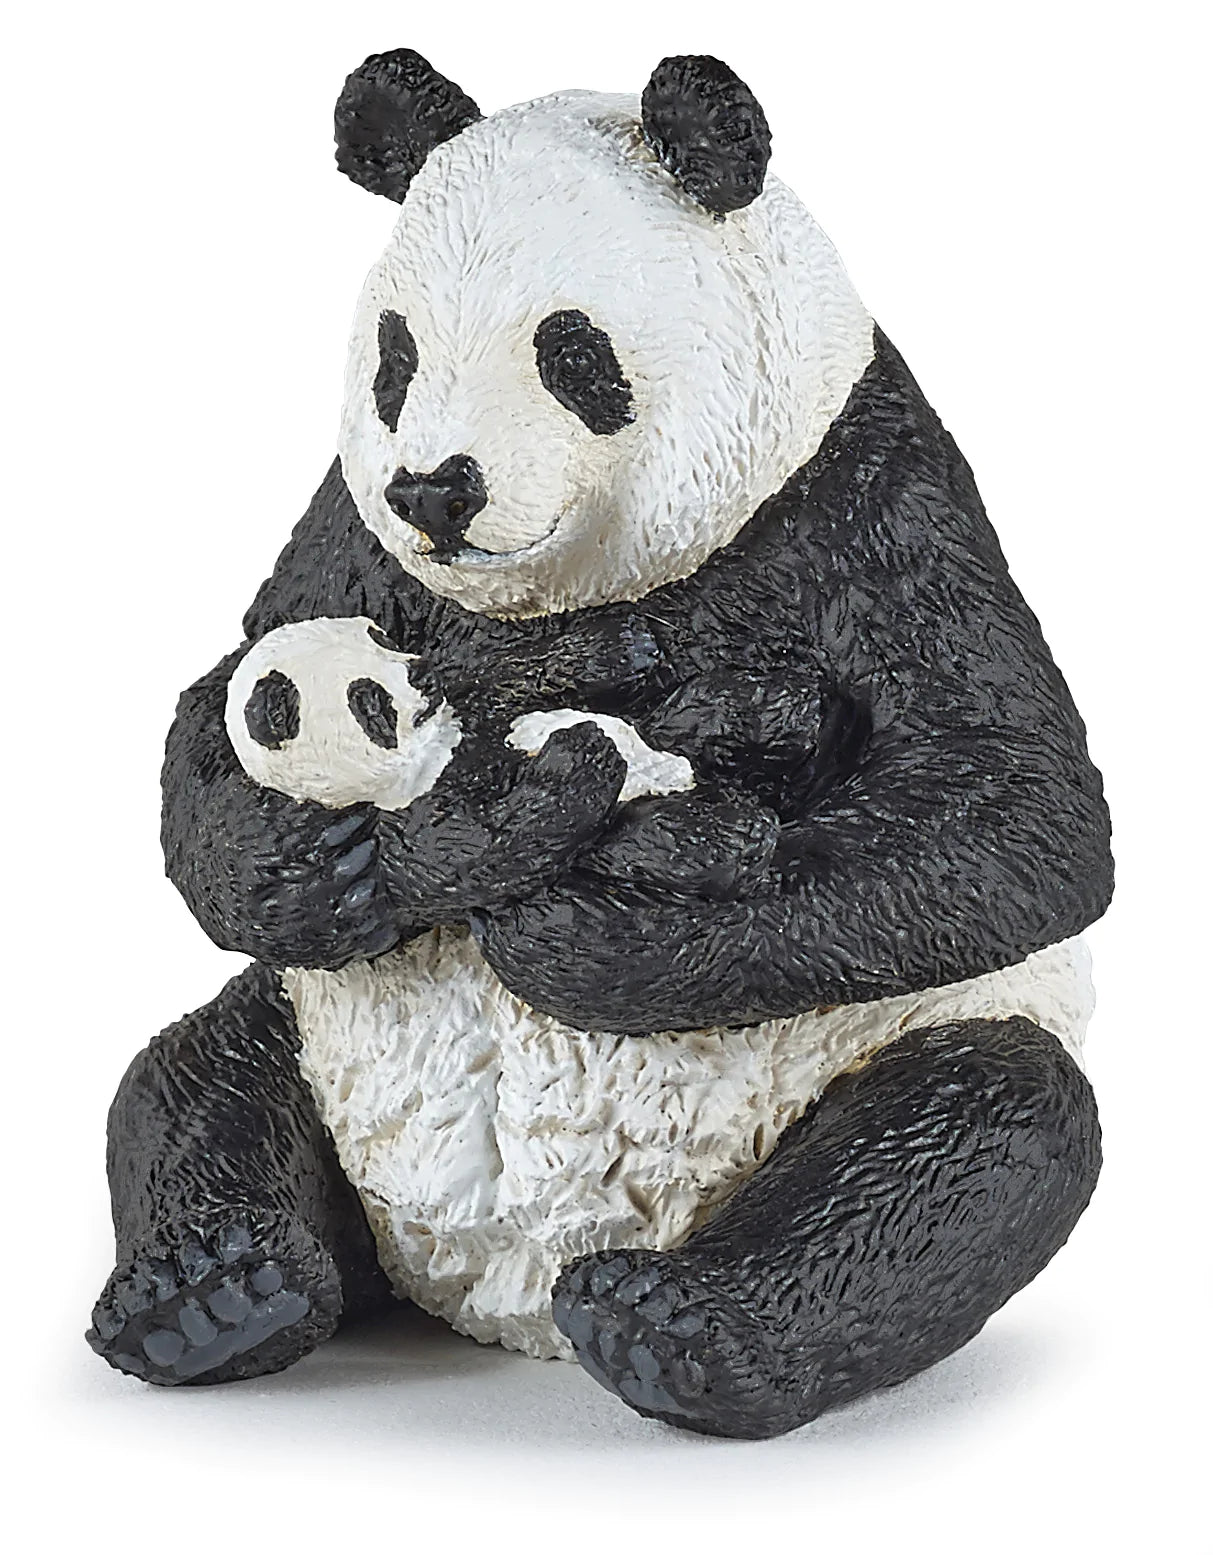 Figurine - Sitting Panda And Baby